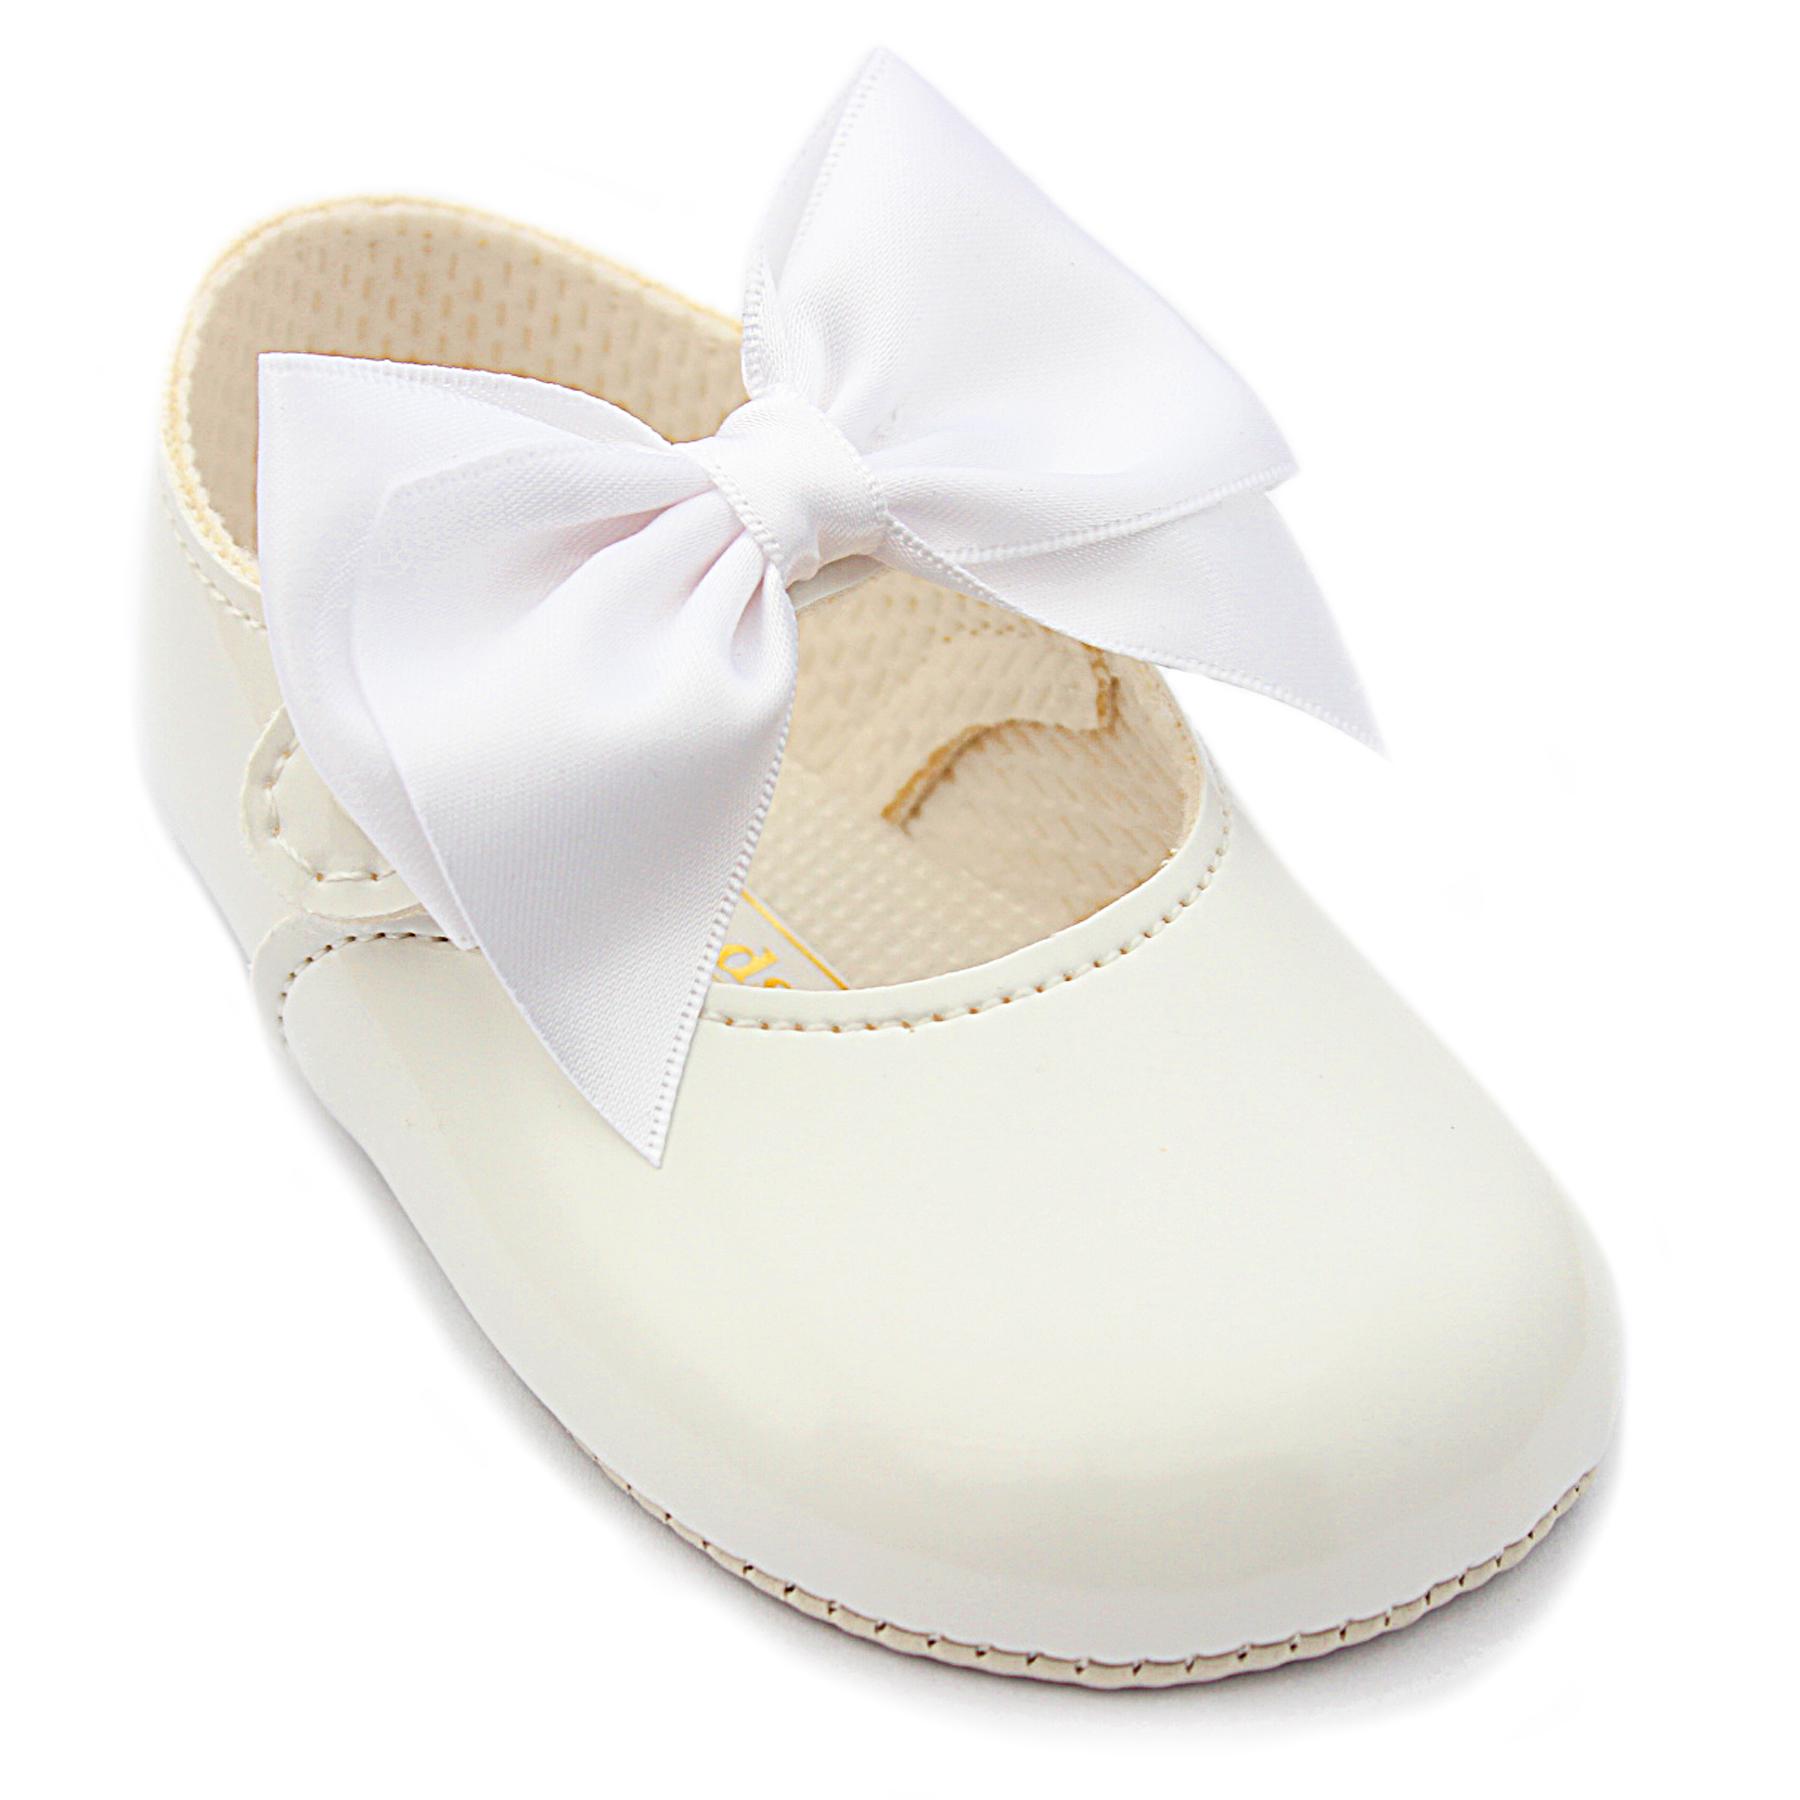 Baby girls organza ribbon satin pram shoe in ivory or white 